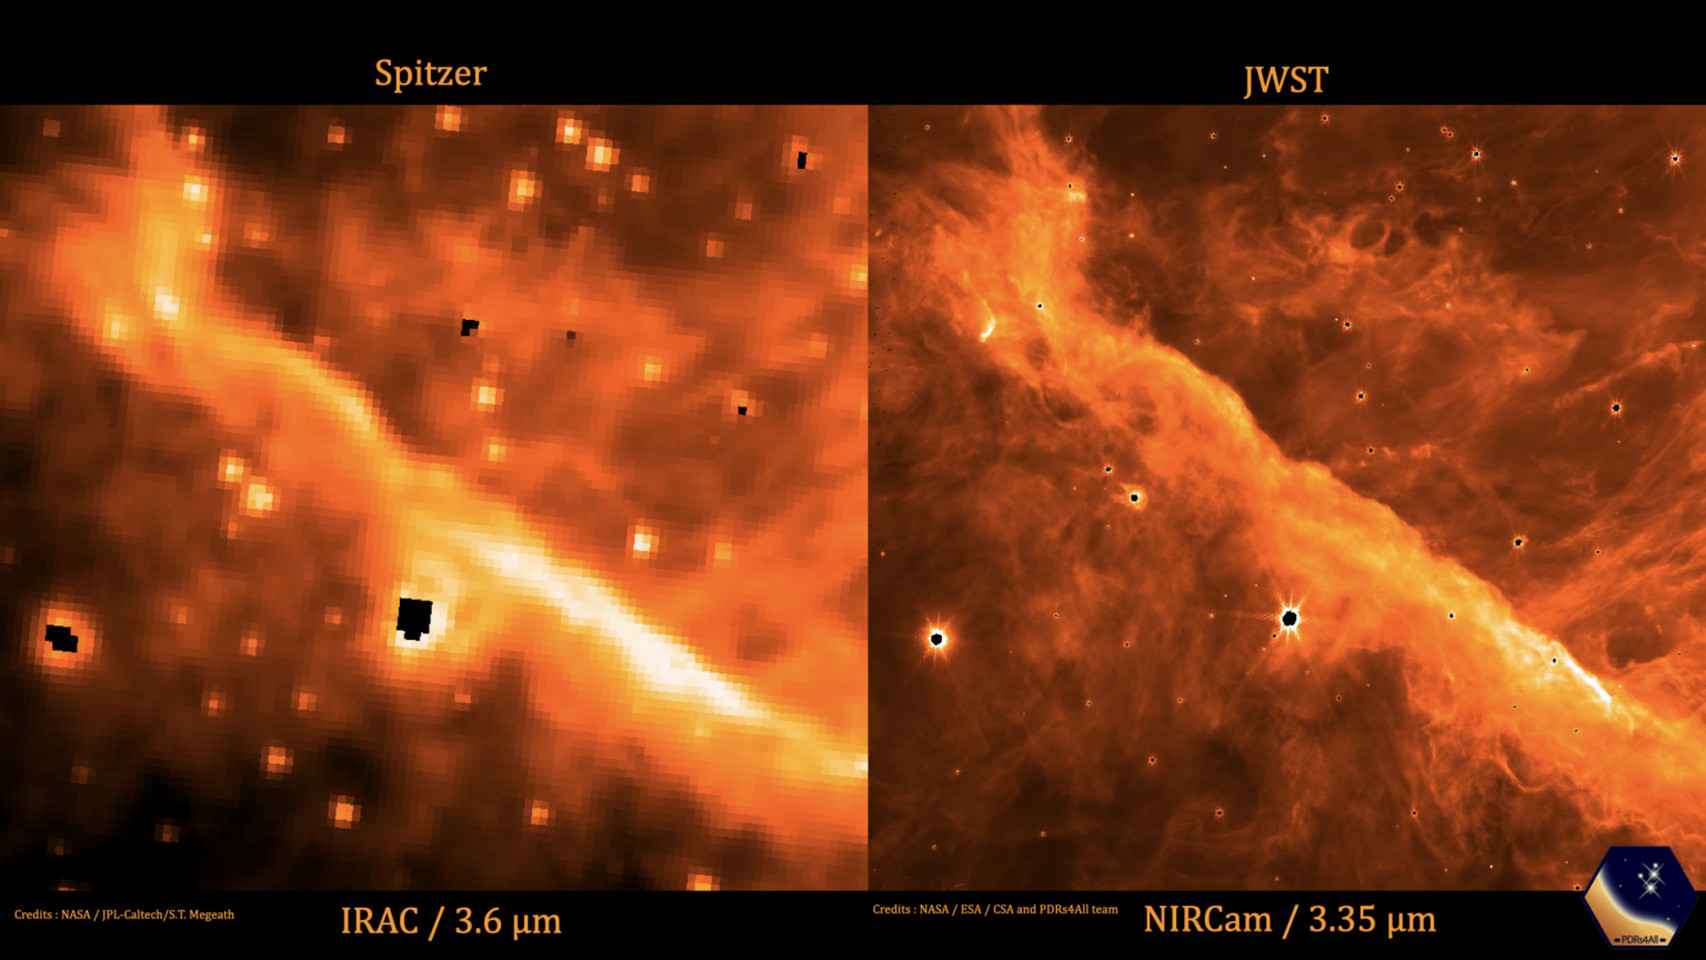 Telescopio espacial Spitzer (izquierda) y telescopio James Webb (derecha)